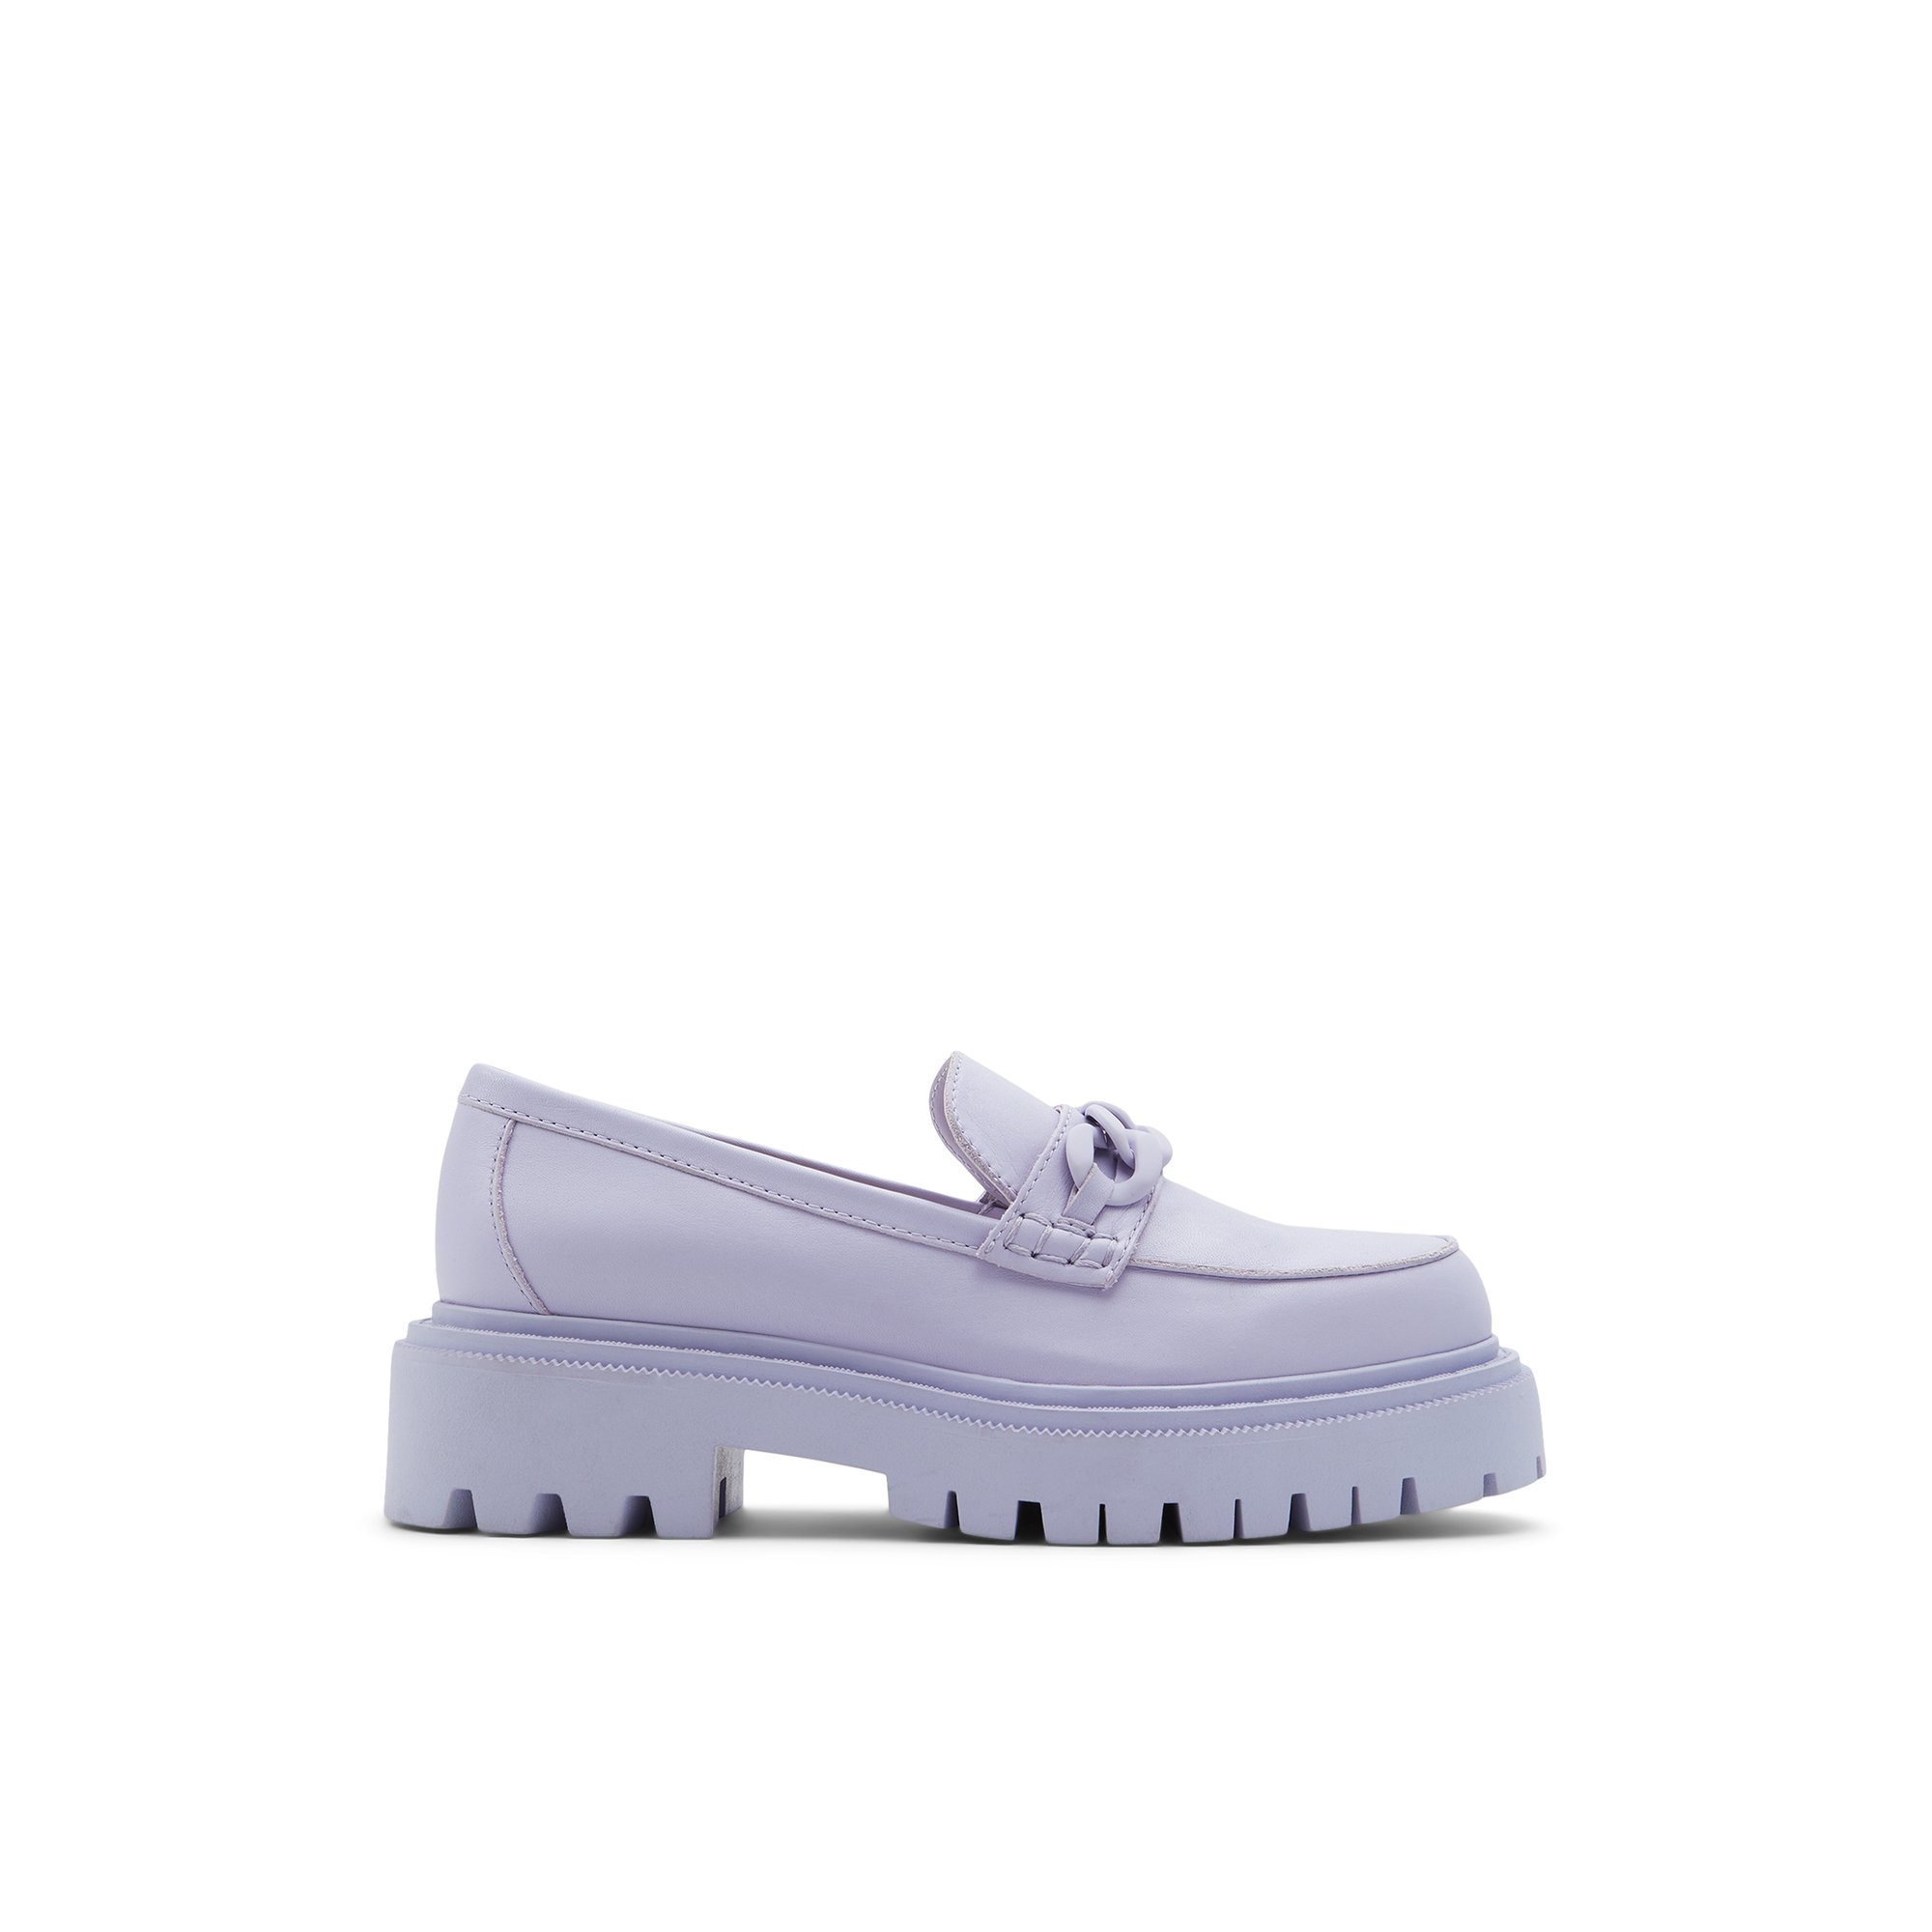 Image of ALDO Bigstrutx - Women's Loafer Flats - Purple, Size 8